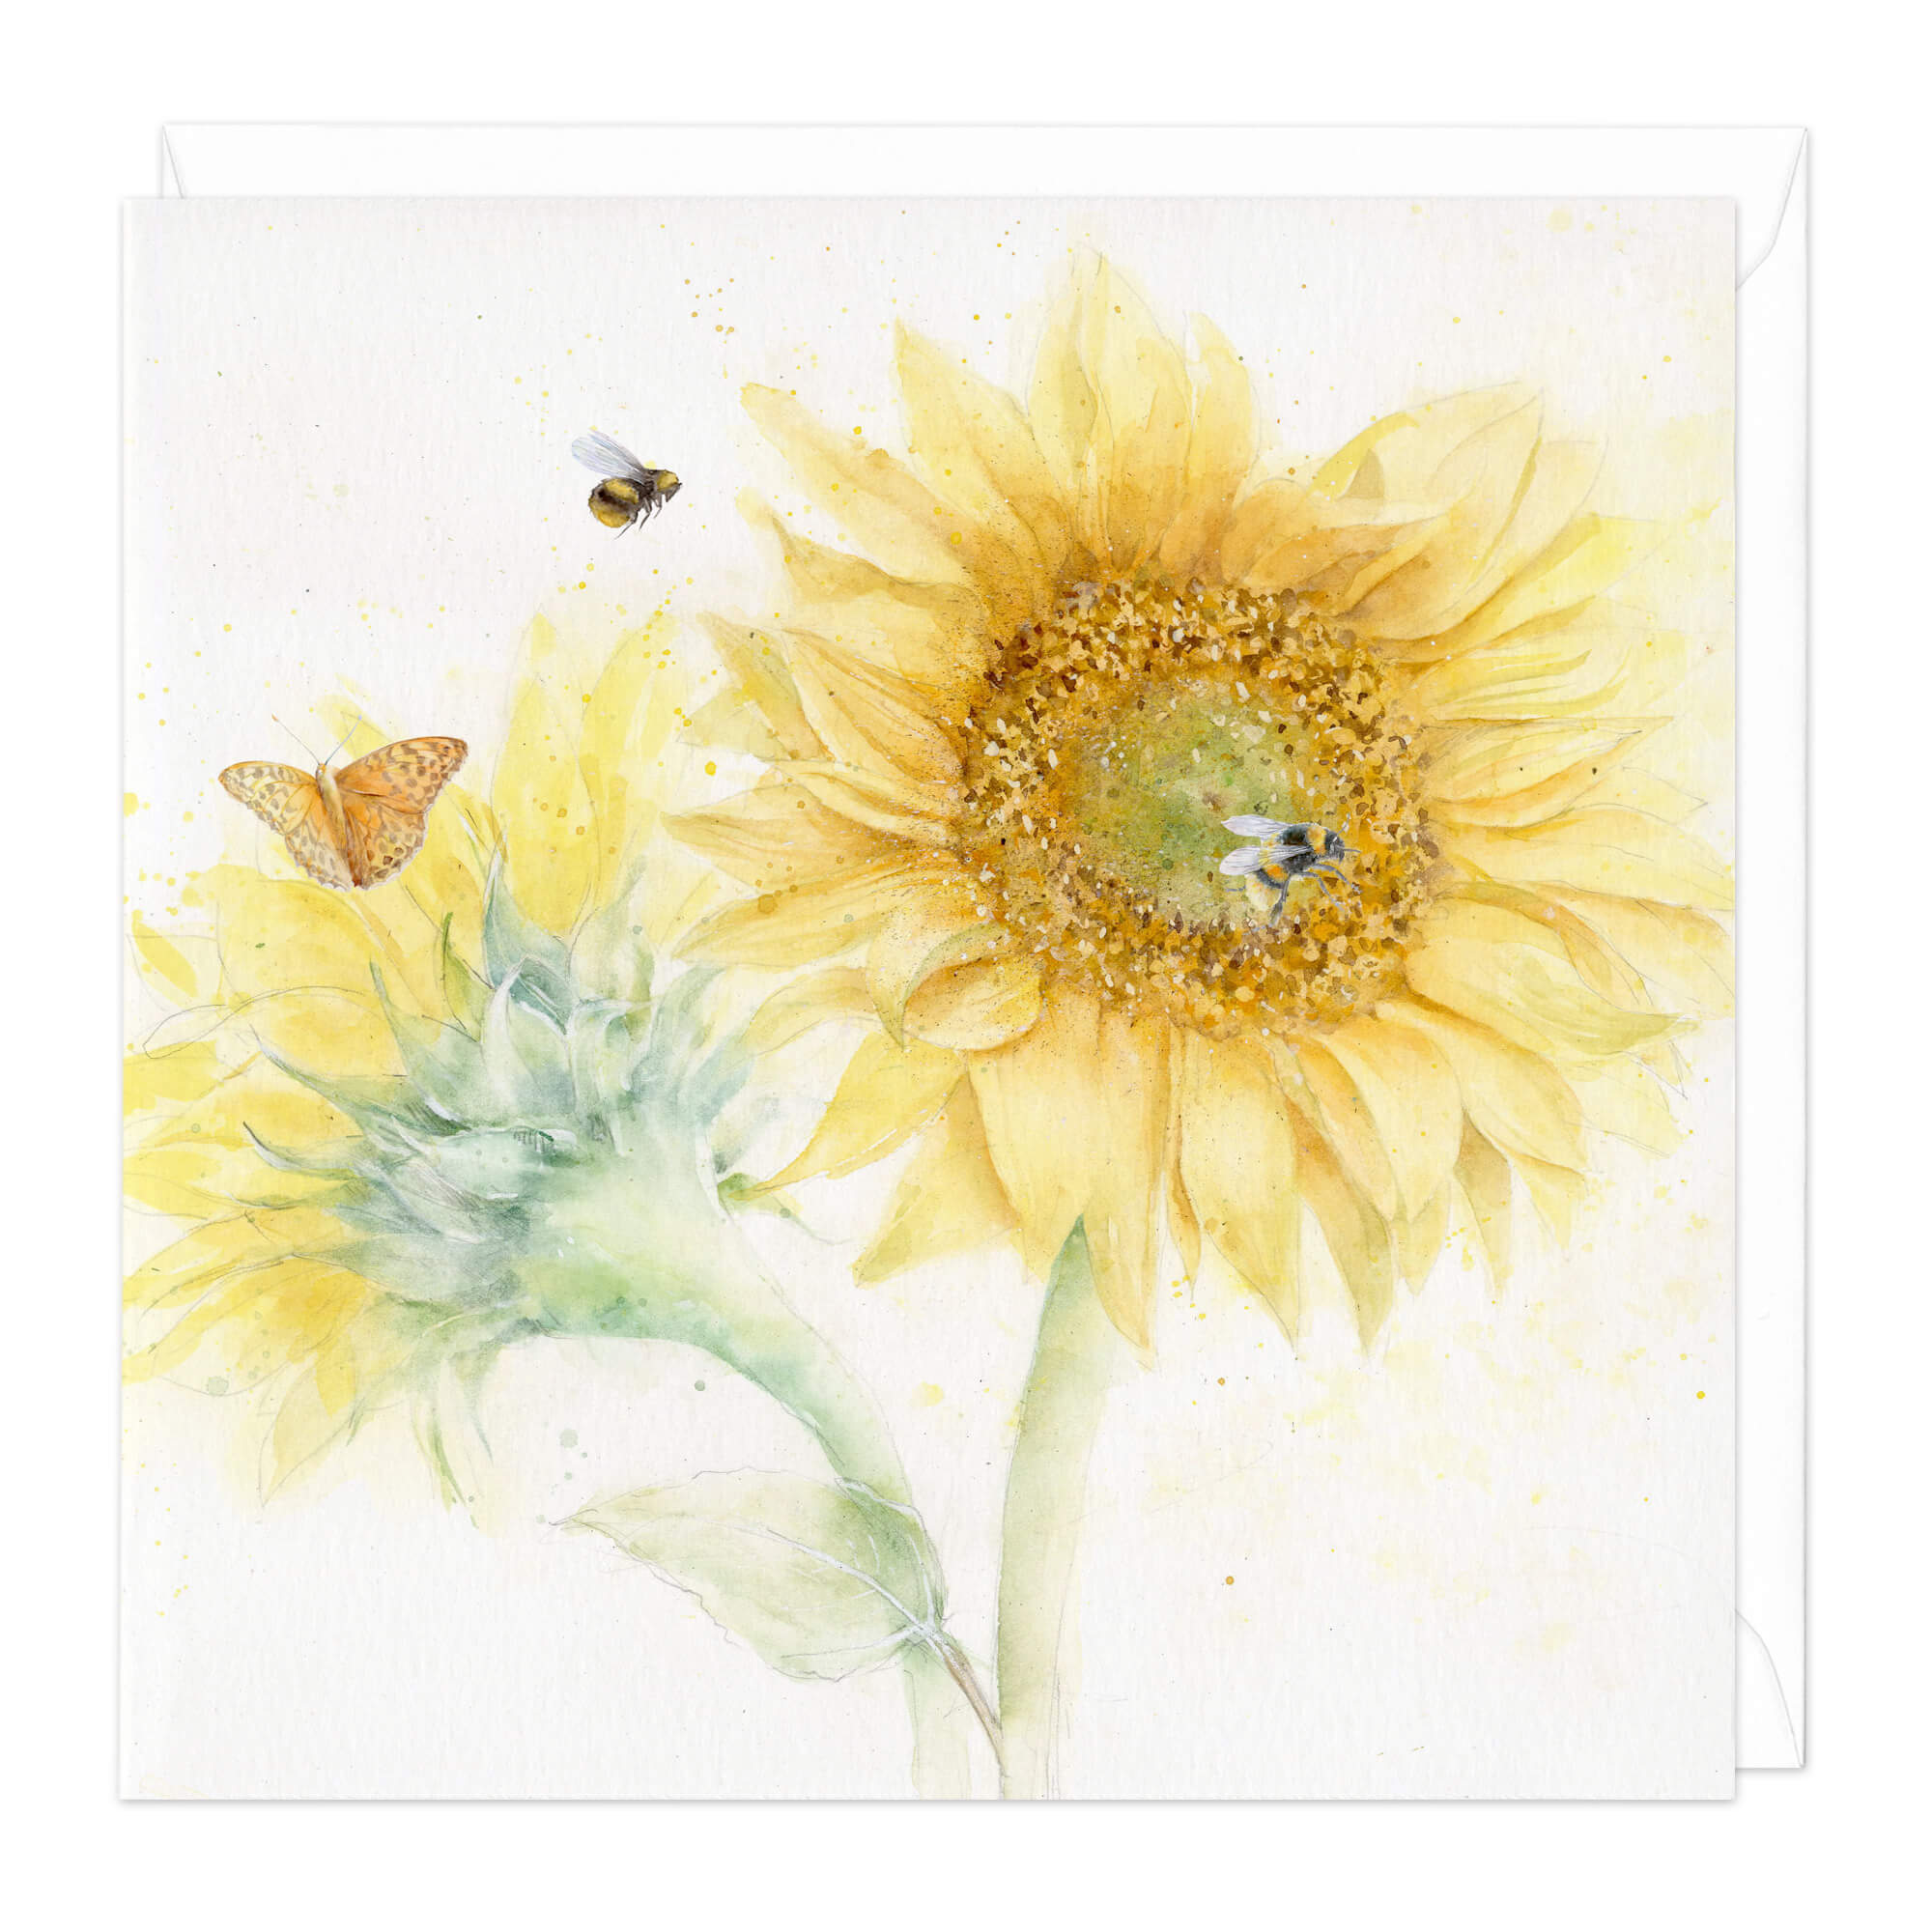 Sunflower Art Card